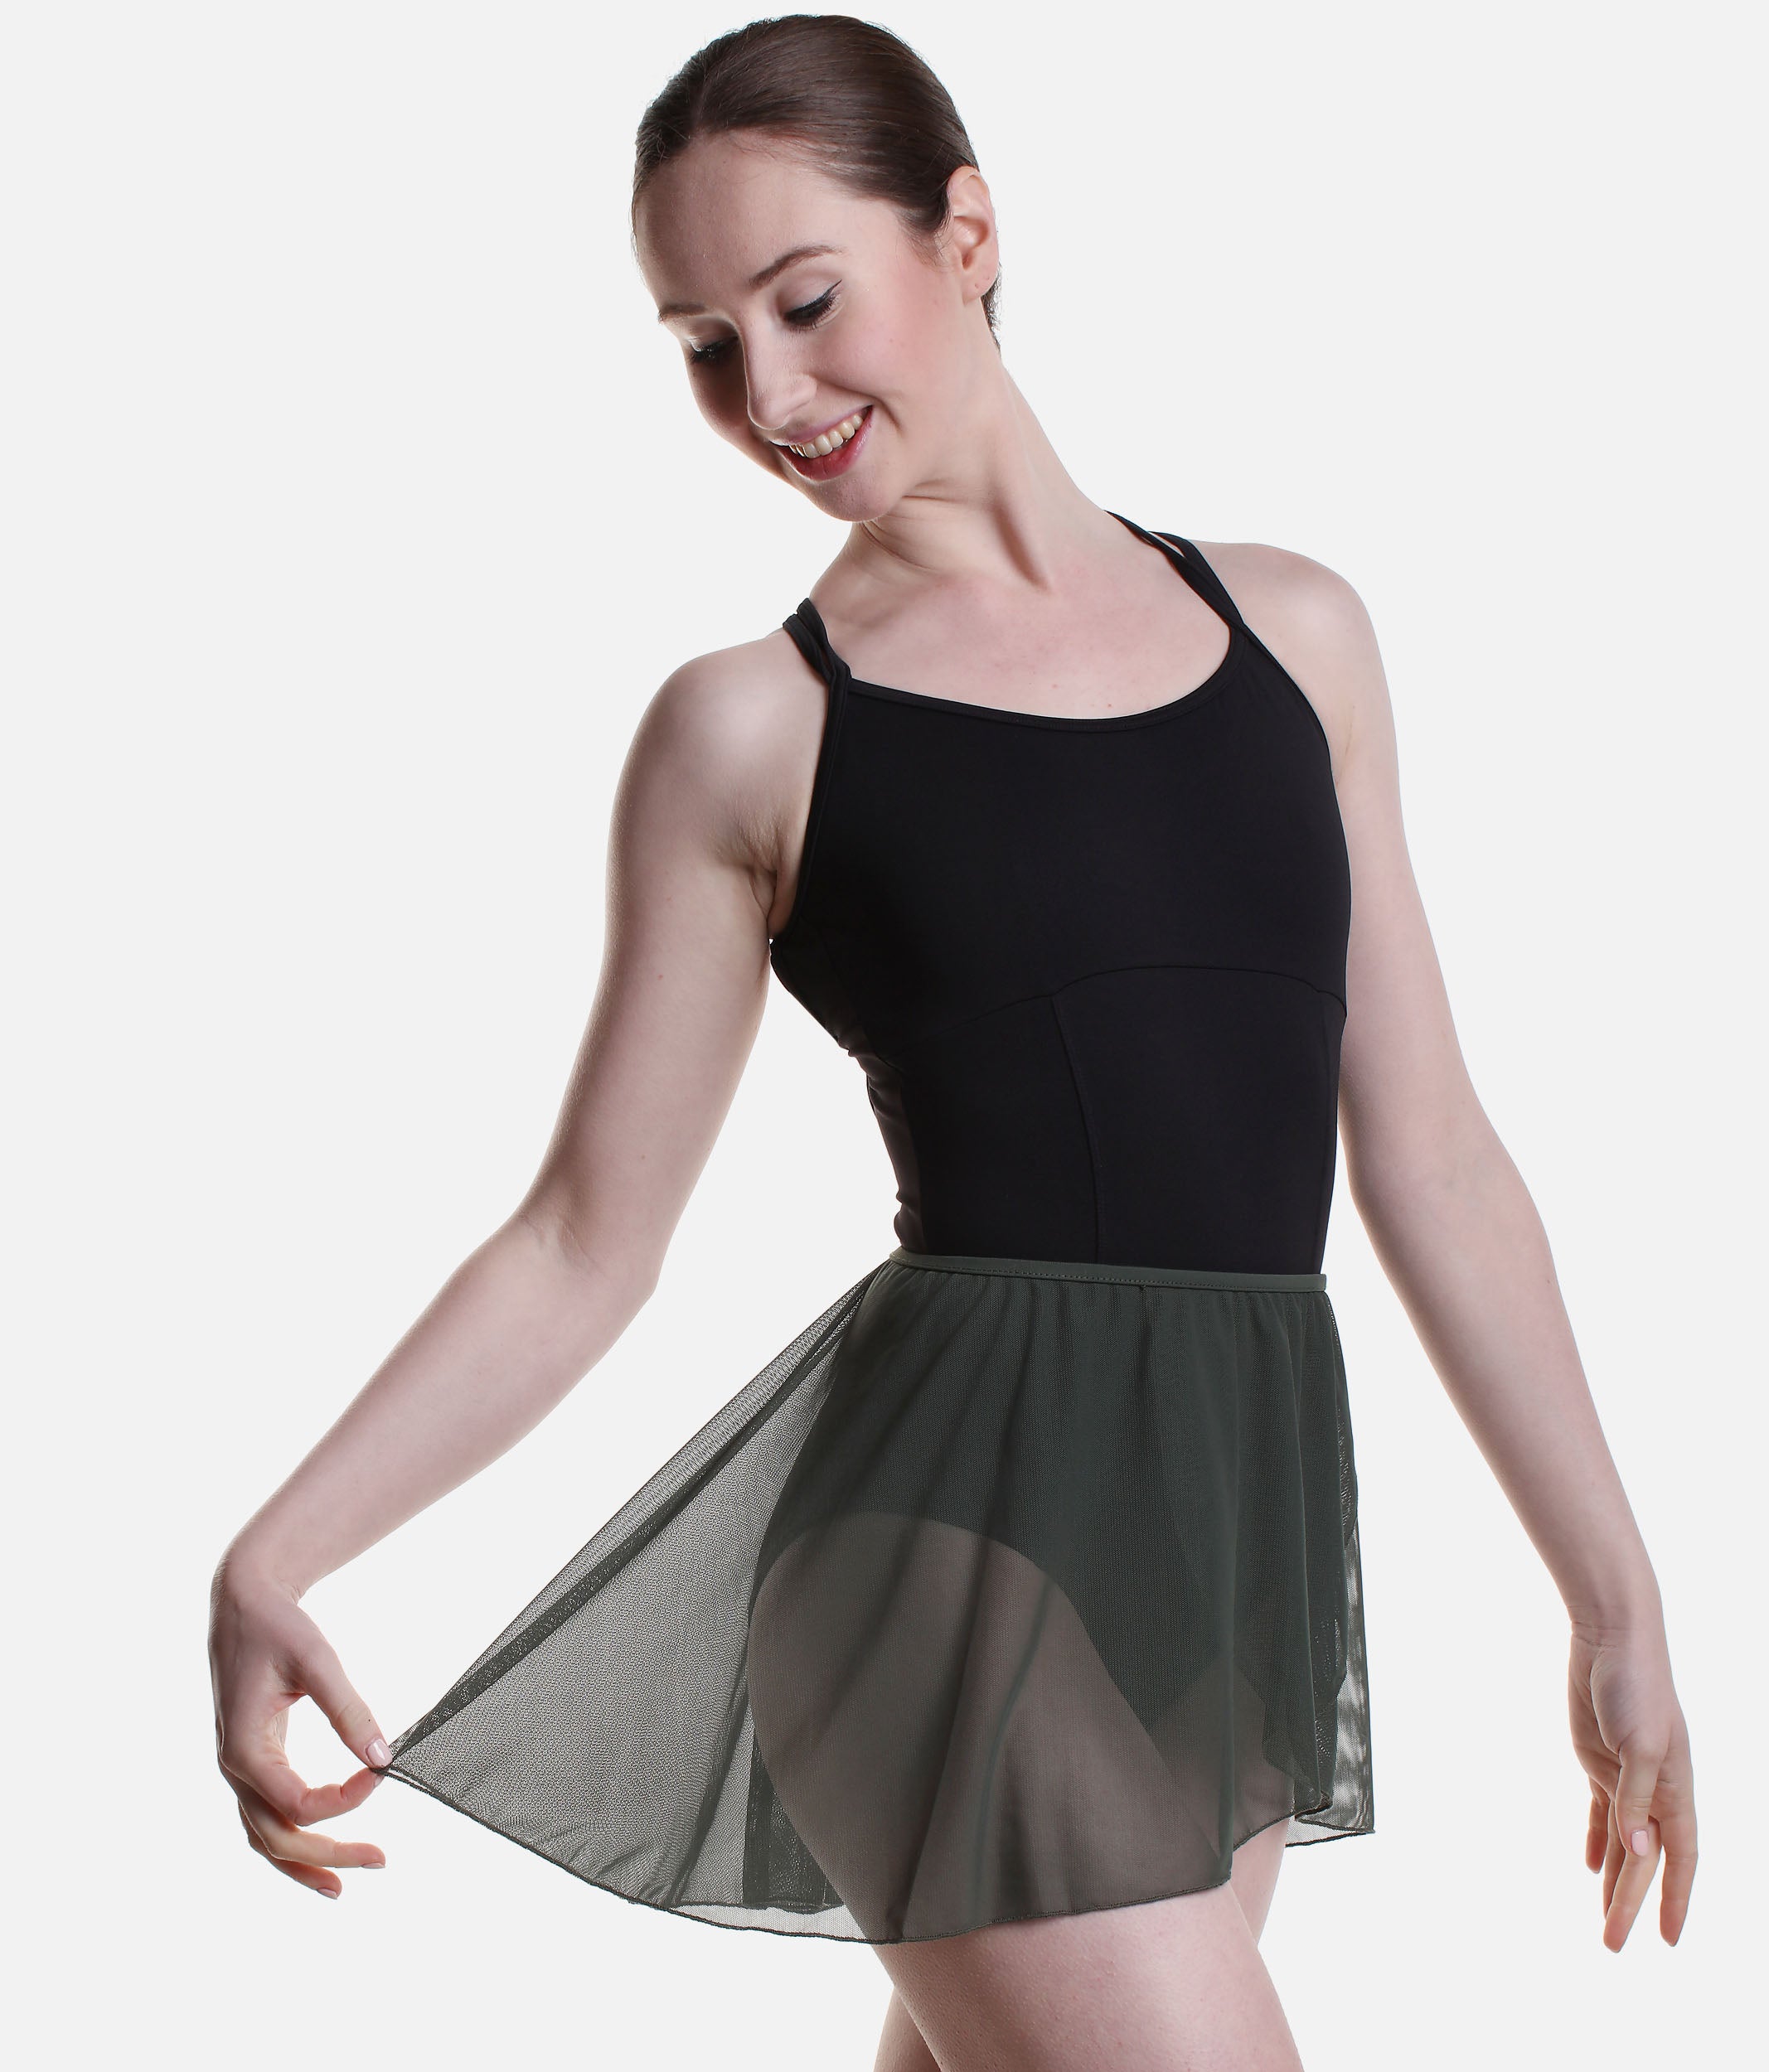 Pull-On Dance Skirt, Mock Wrap Design - BETHANIE